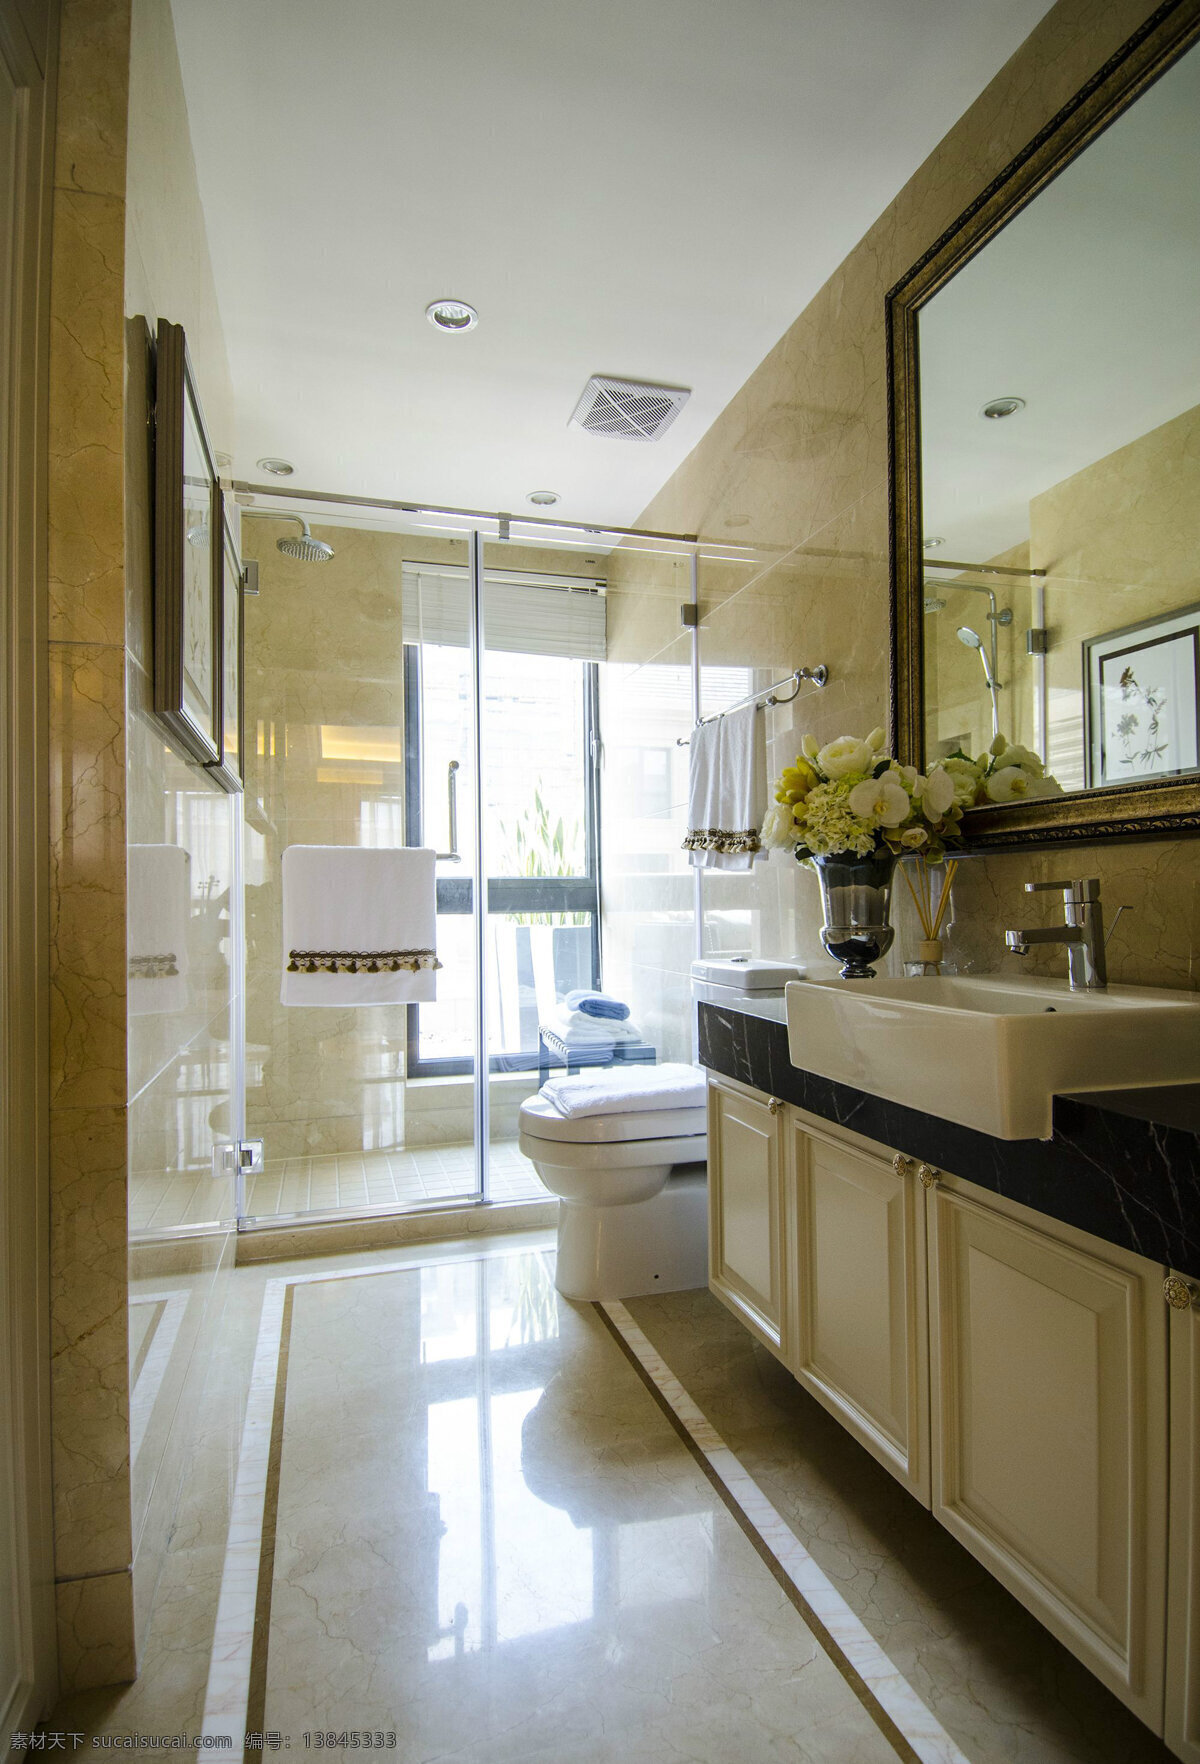 现代 简 欧 风格 浴室 玻璃 移门 装修 效果图 简欧风格 浴室装修 米黄色 装饰设计